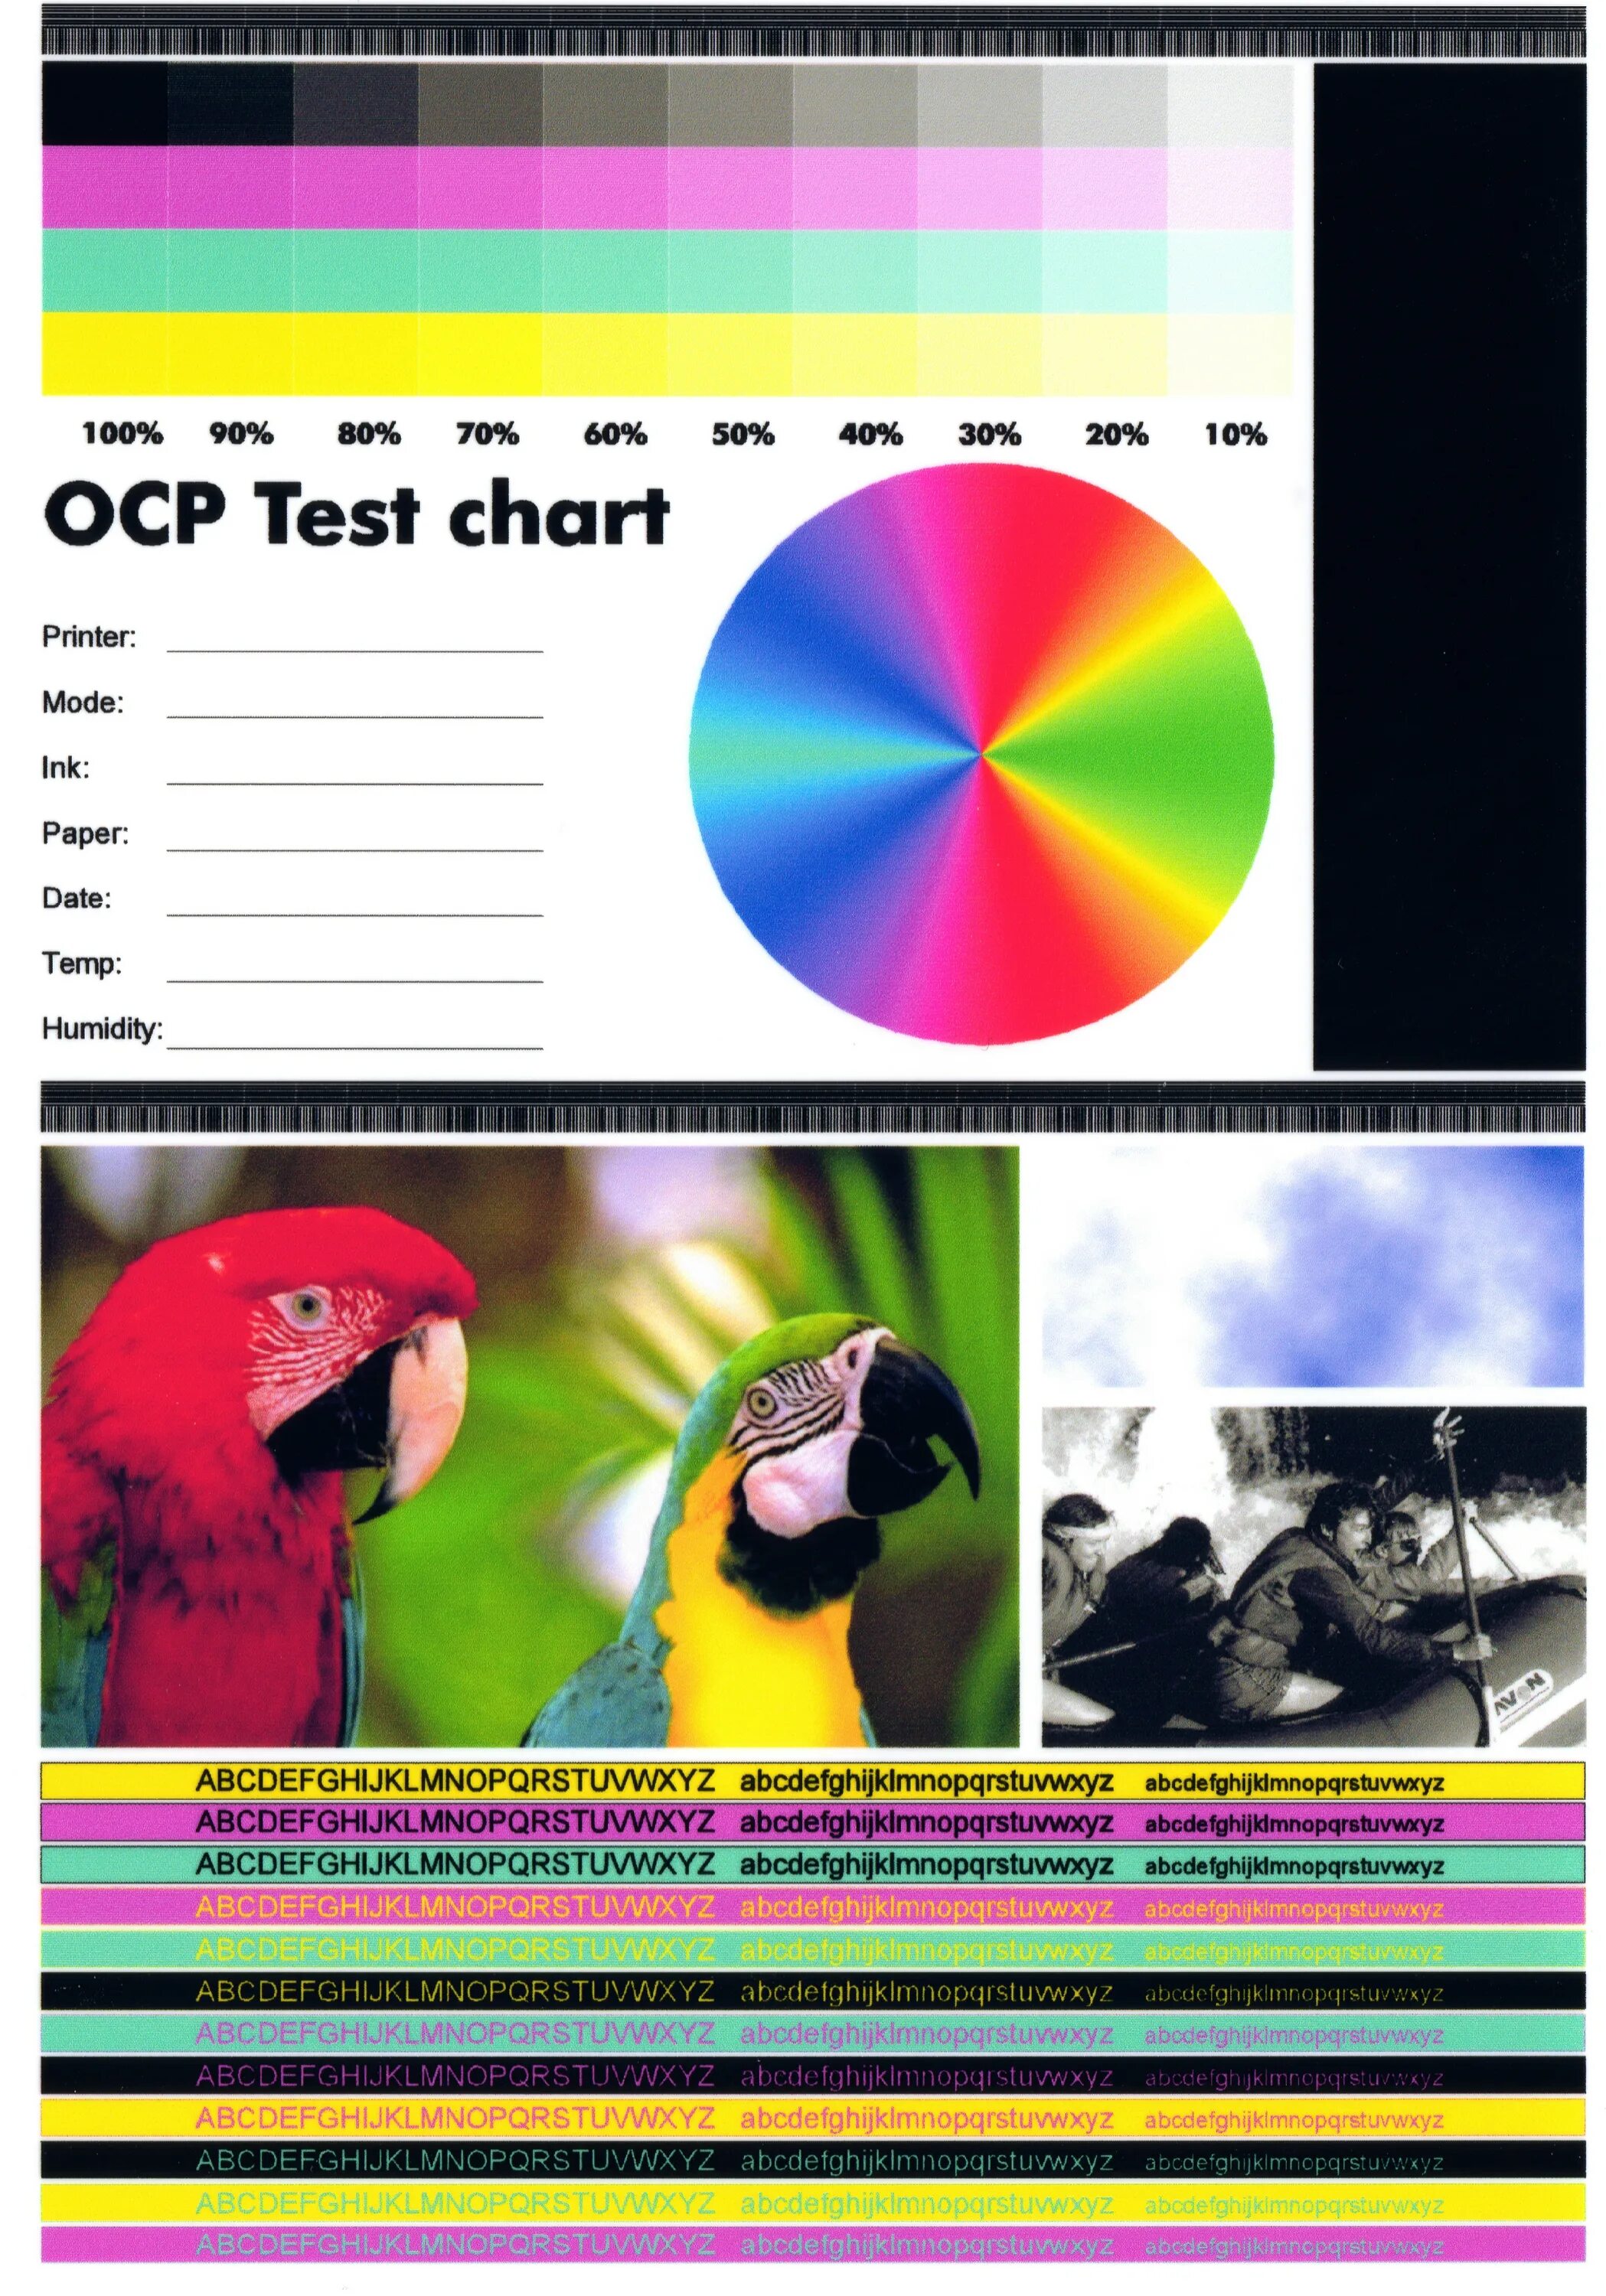 Тестовая печать Epson. Проверка цвета принтера 4 цвета. Тест печати Эпсон 4 цвета. Тест печати струйного принтера Epson 4 цвета.